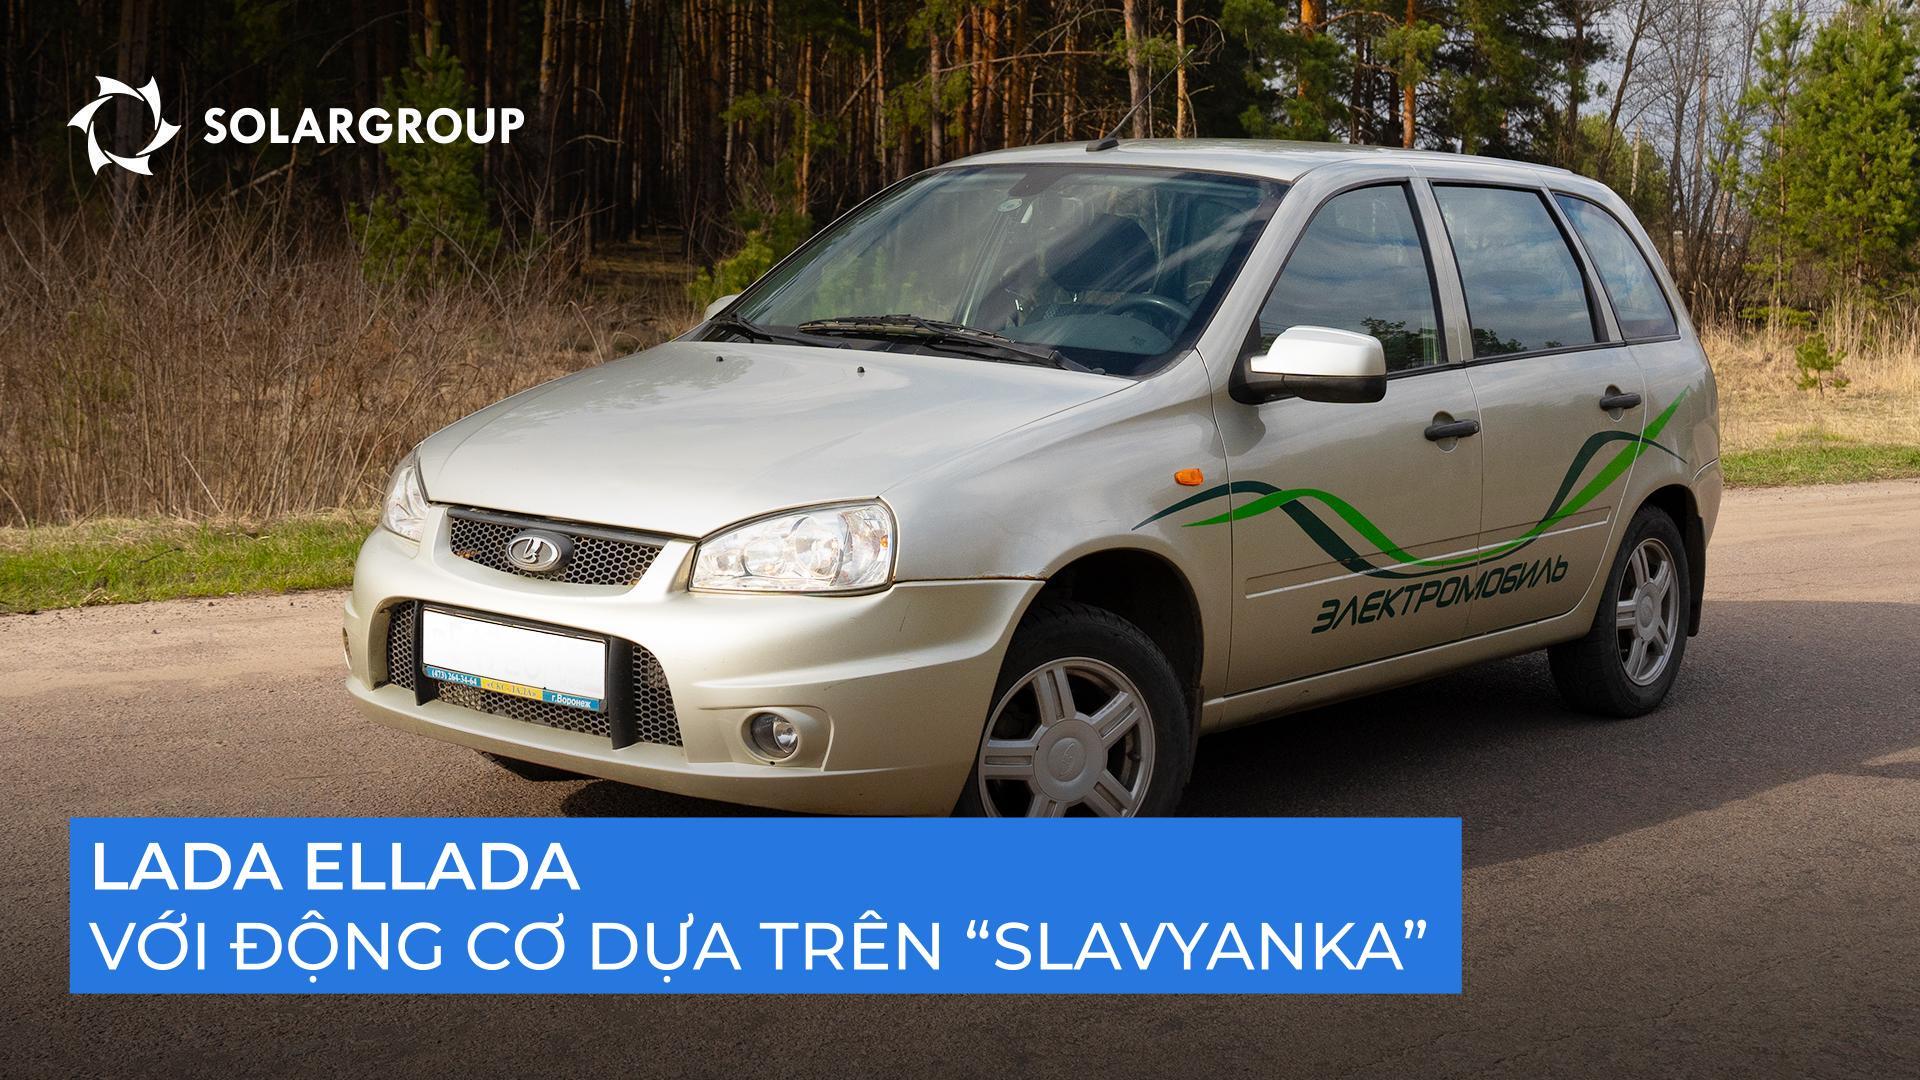 Nhanh, yên tĩnh và bền bỉ: các cuộc chạy thử nghiệm của mẫu xe điện dựa trên "Slavyanka" đã chứng minh điều gì?